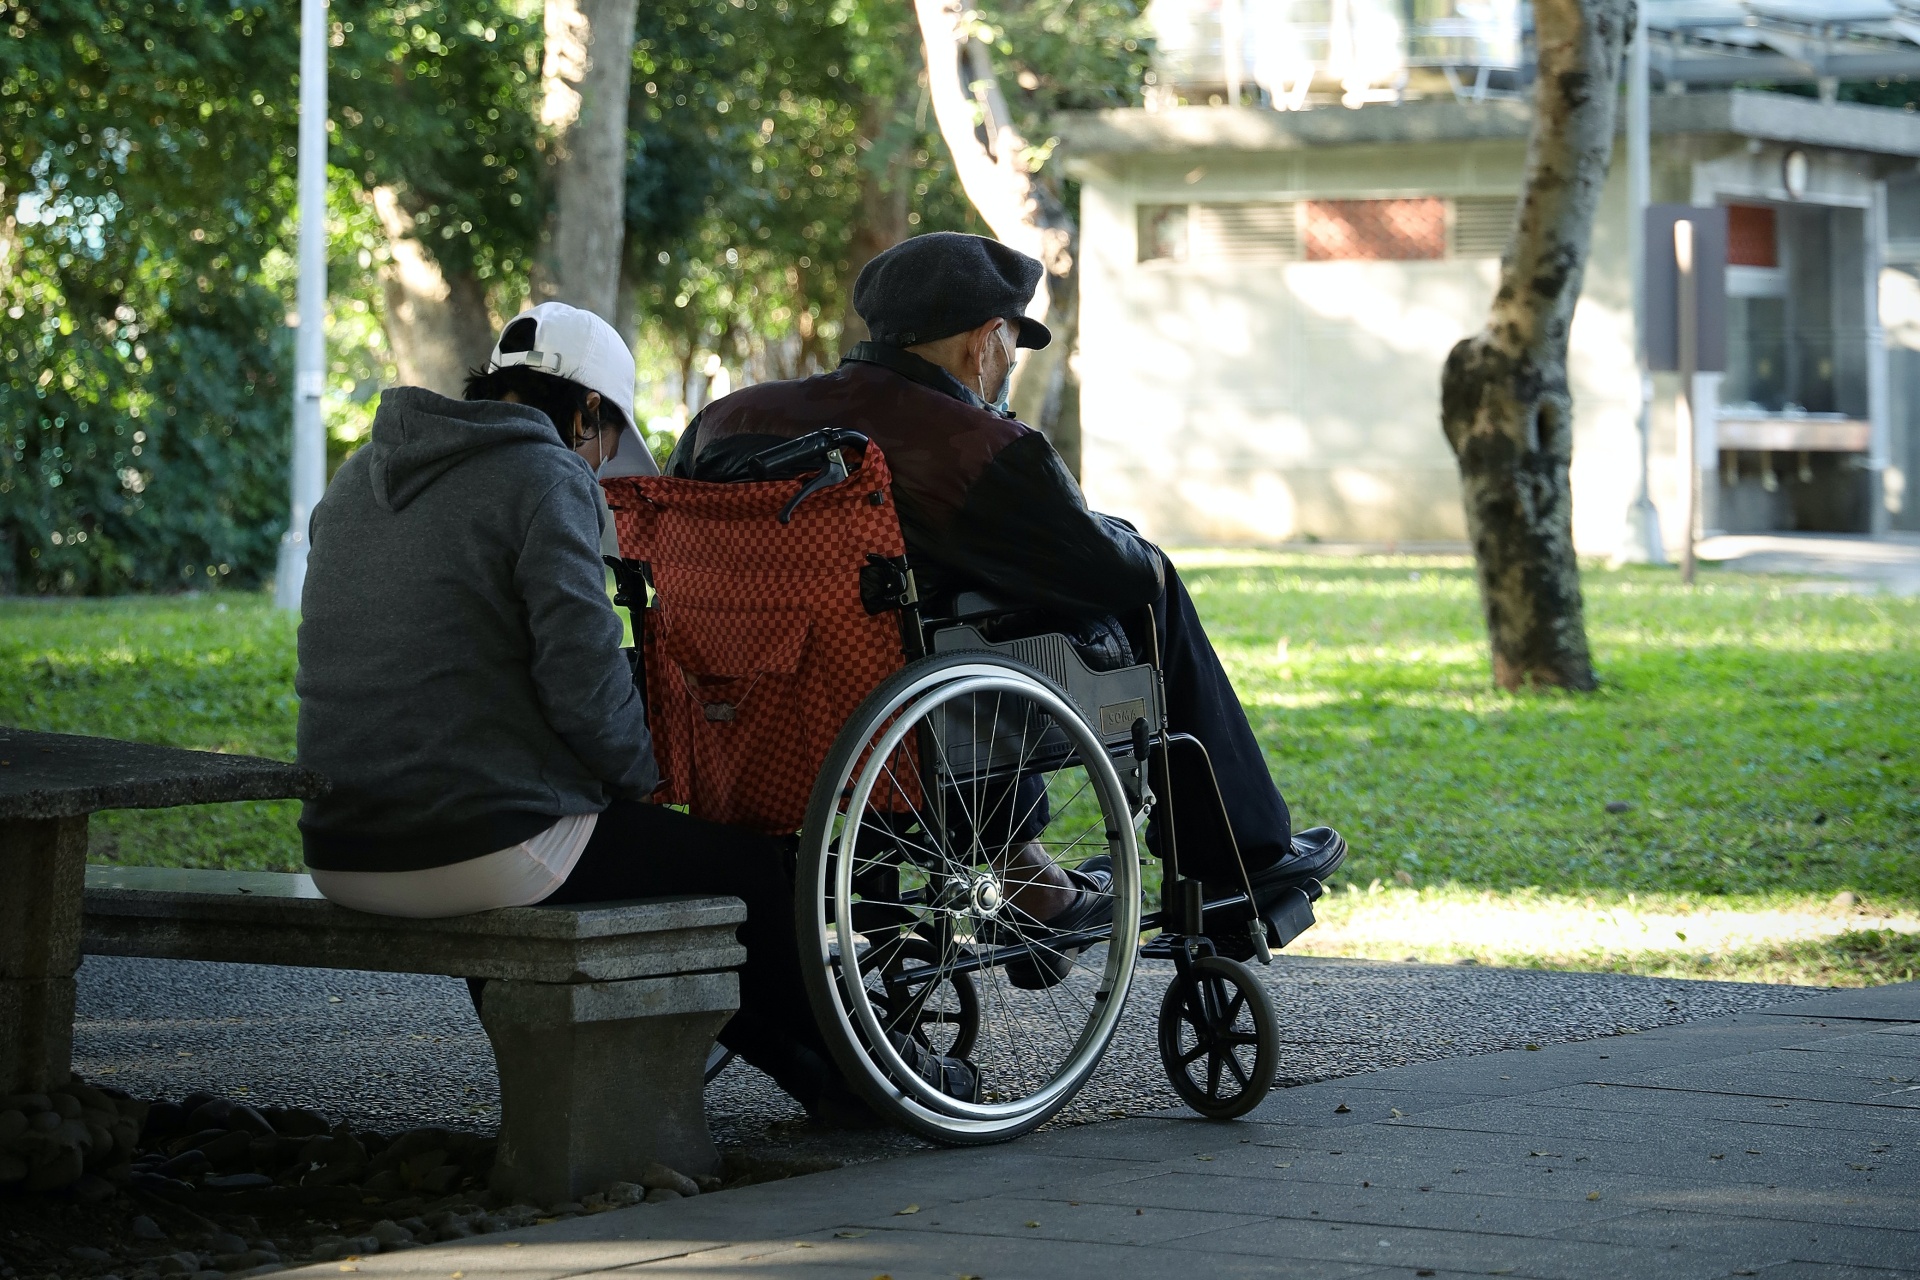 Starsza osoba na wózku wraz z opiekunem